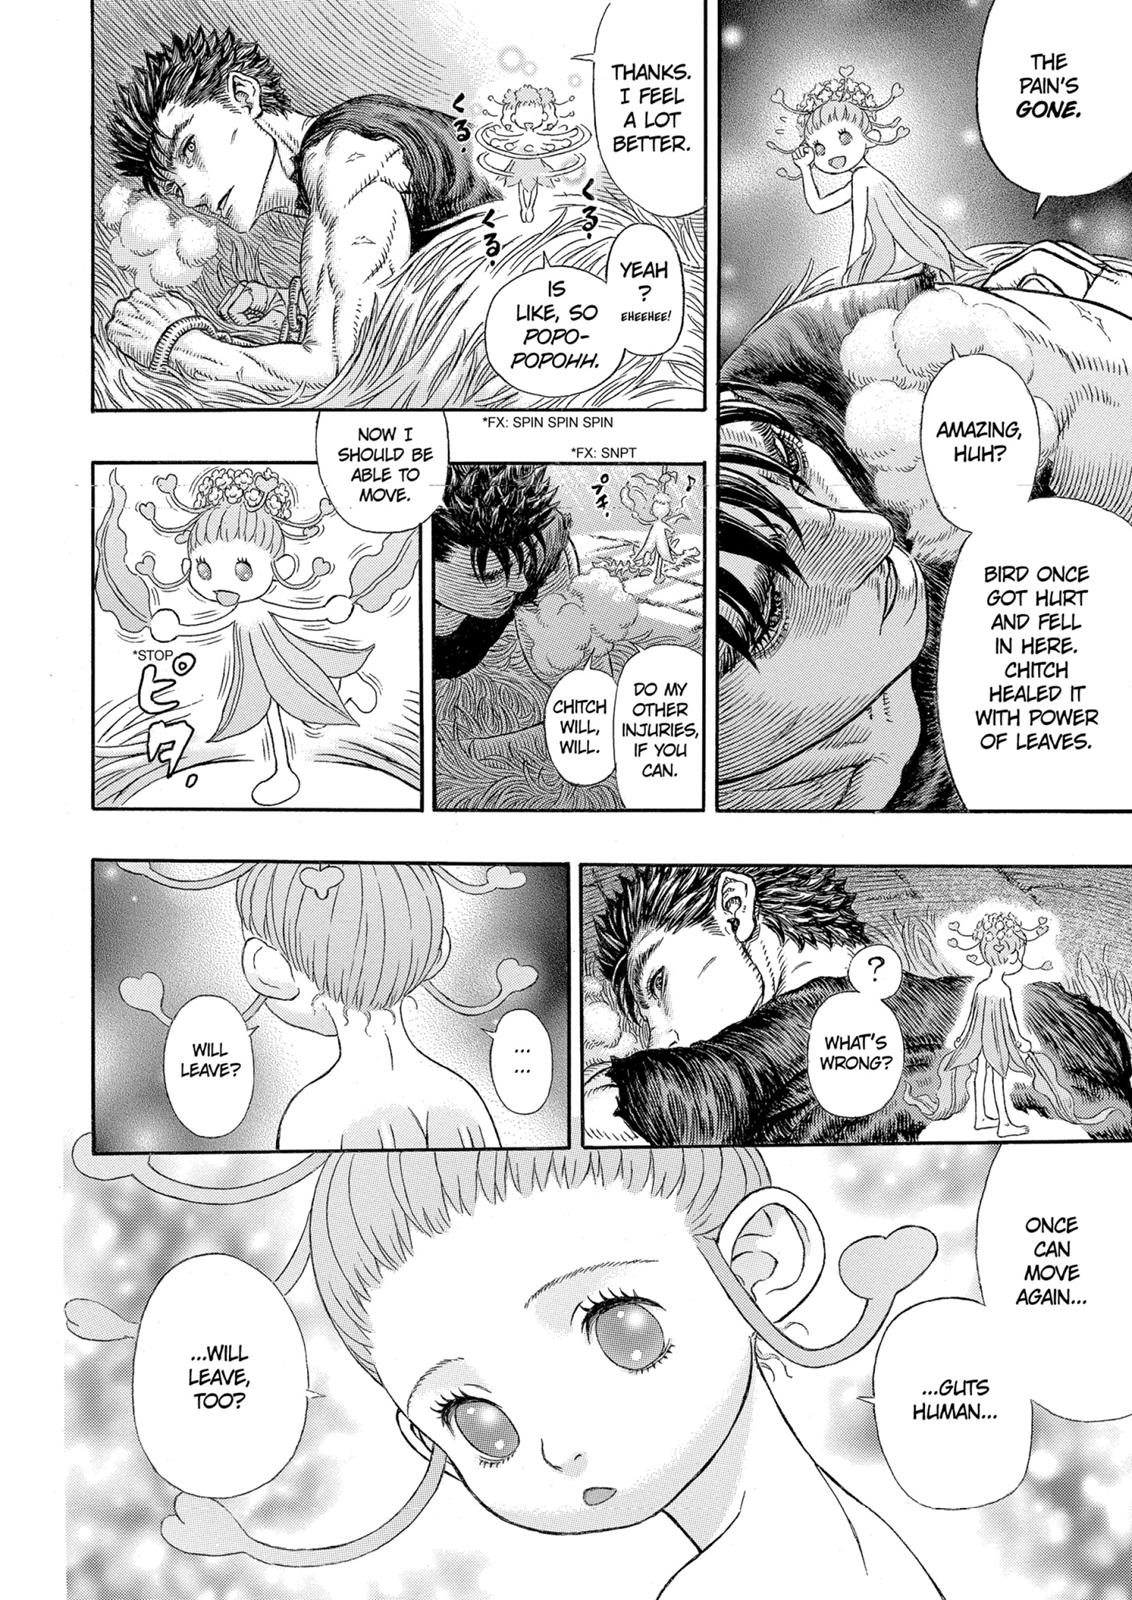 Berserk Manga Chapter 330 image 13